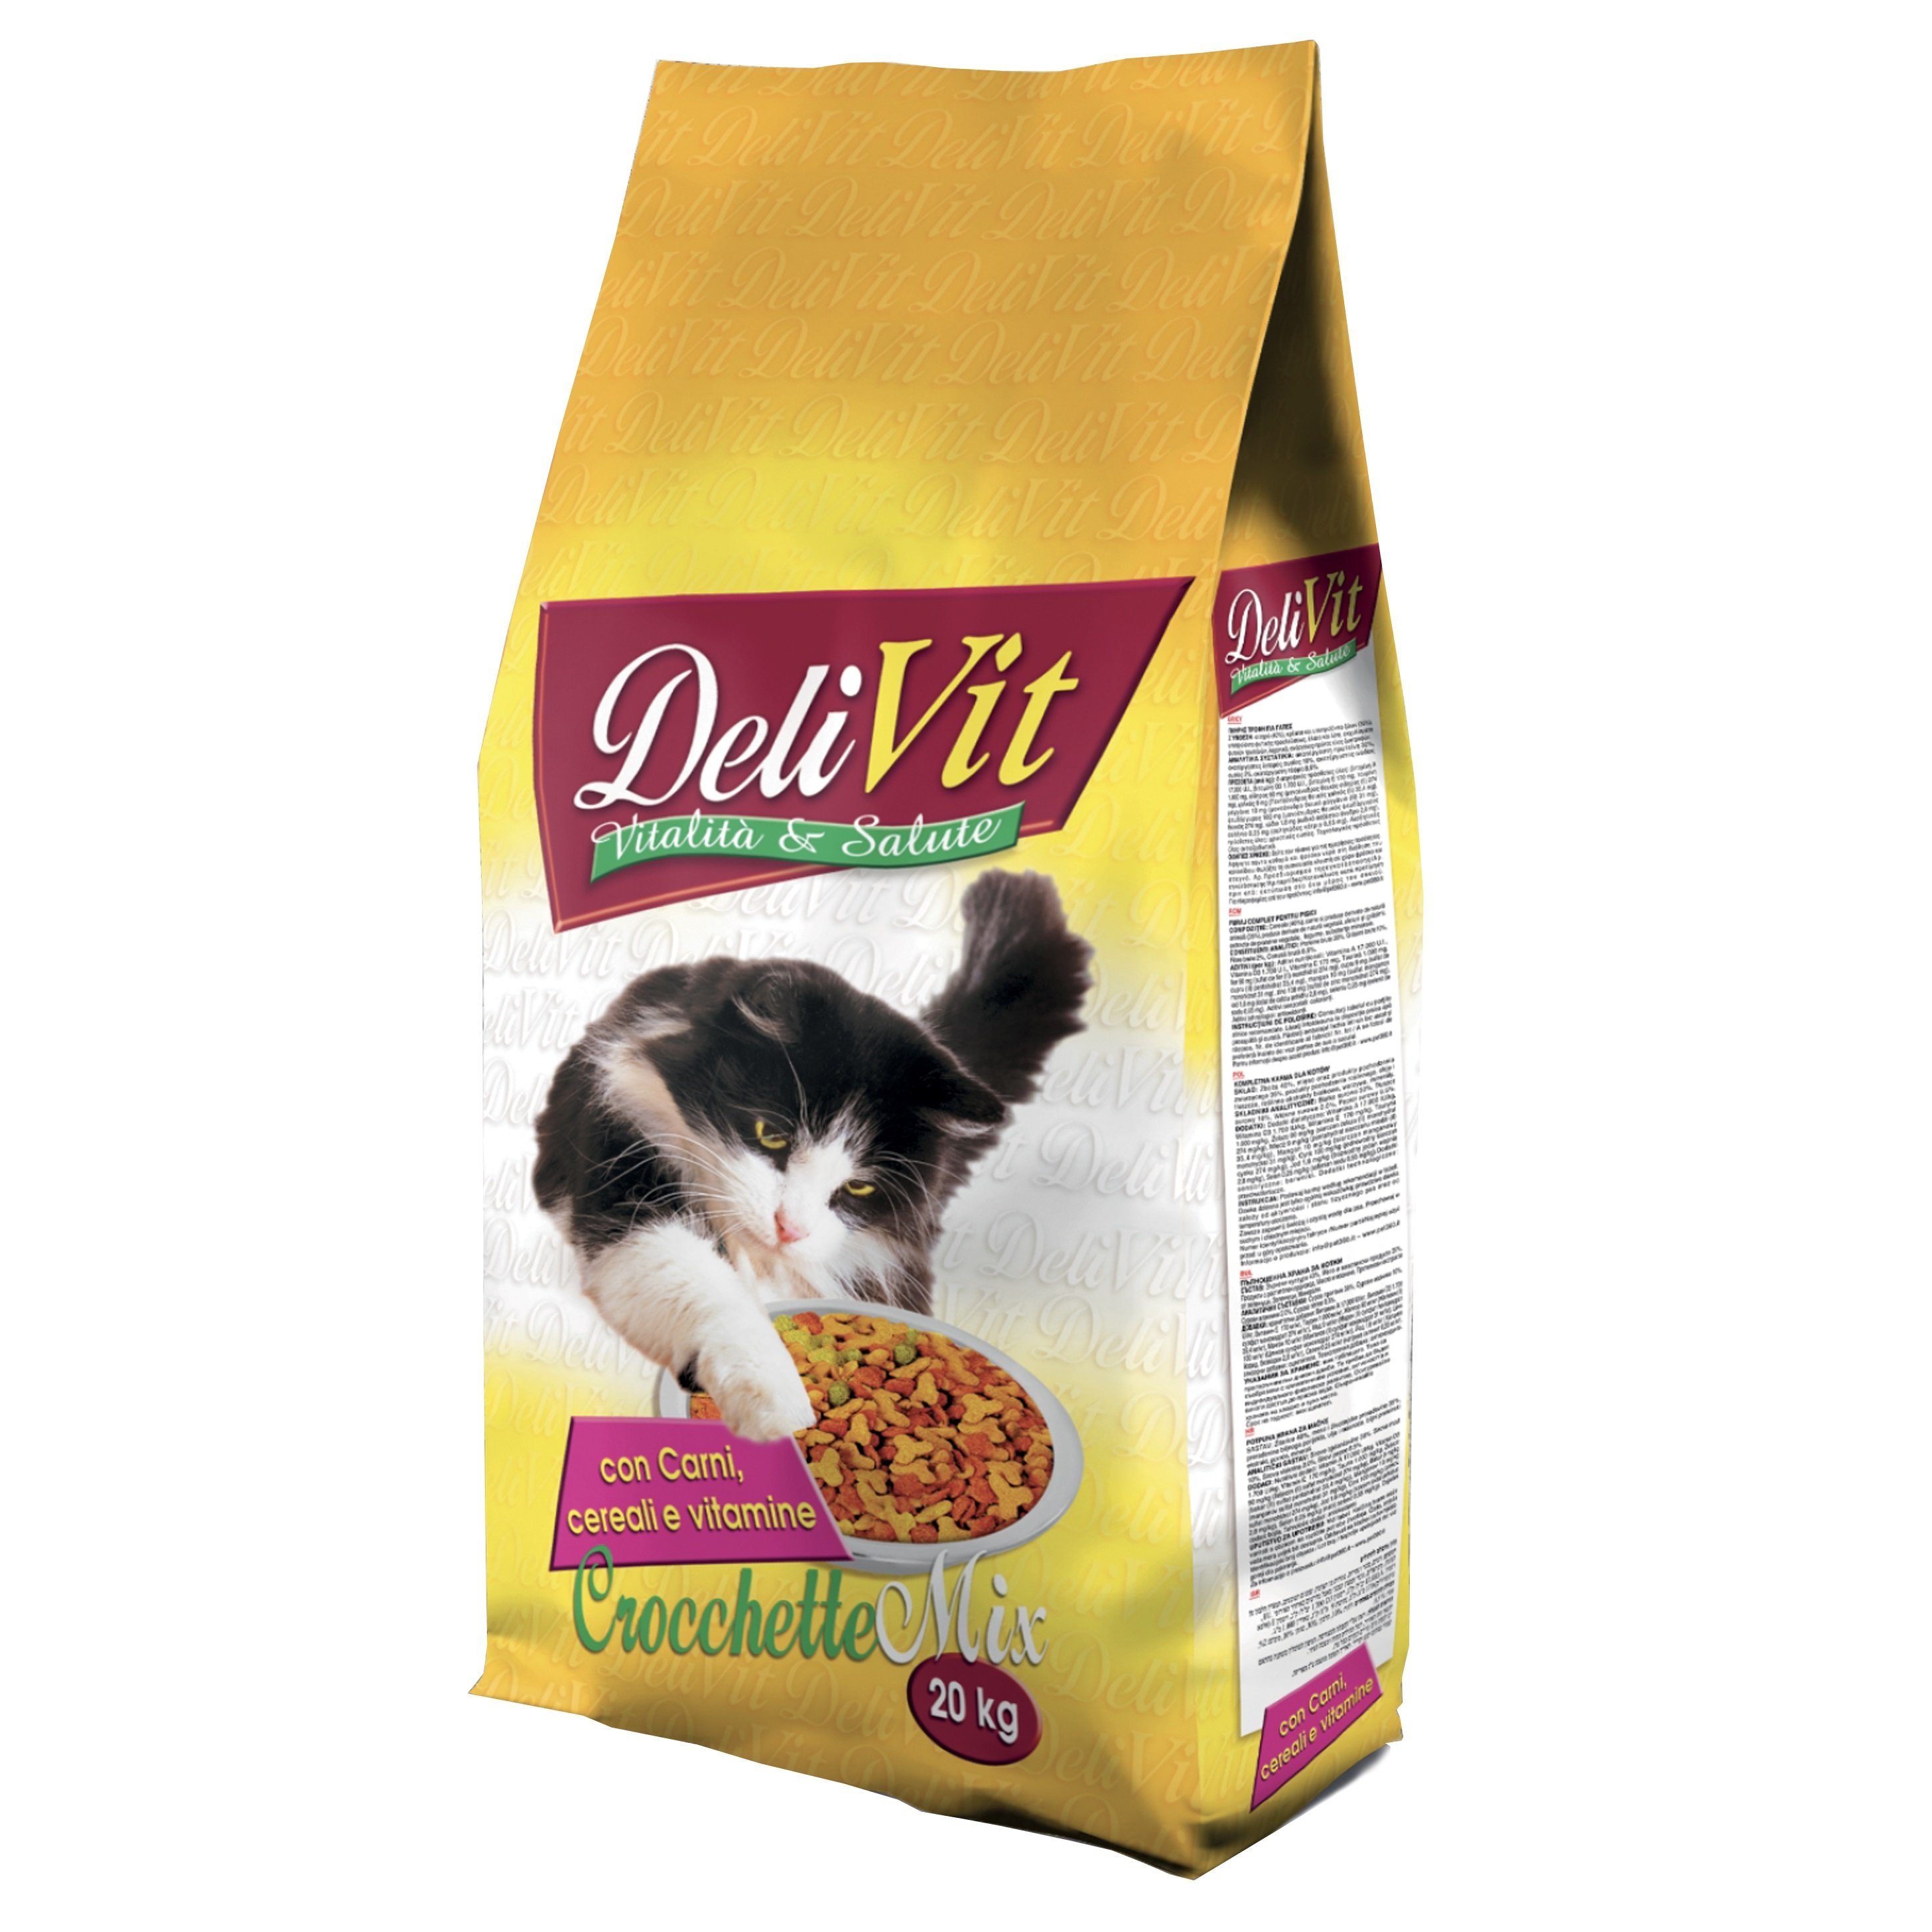 Корм для котов Delivit Mix с мясом, злаками и витаминами, 20 кг - фото 1